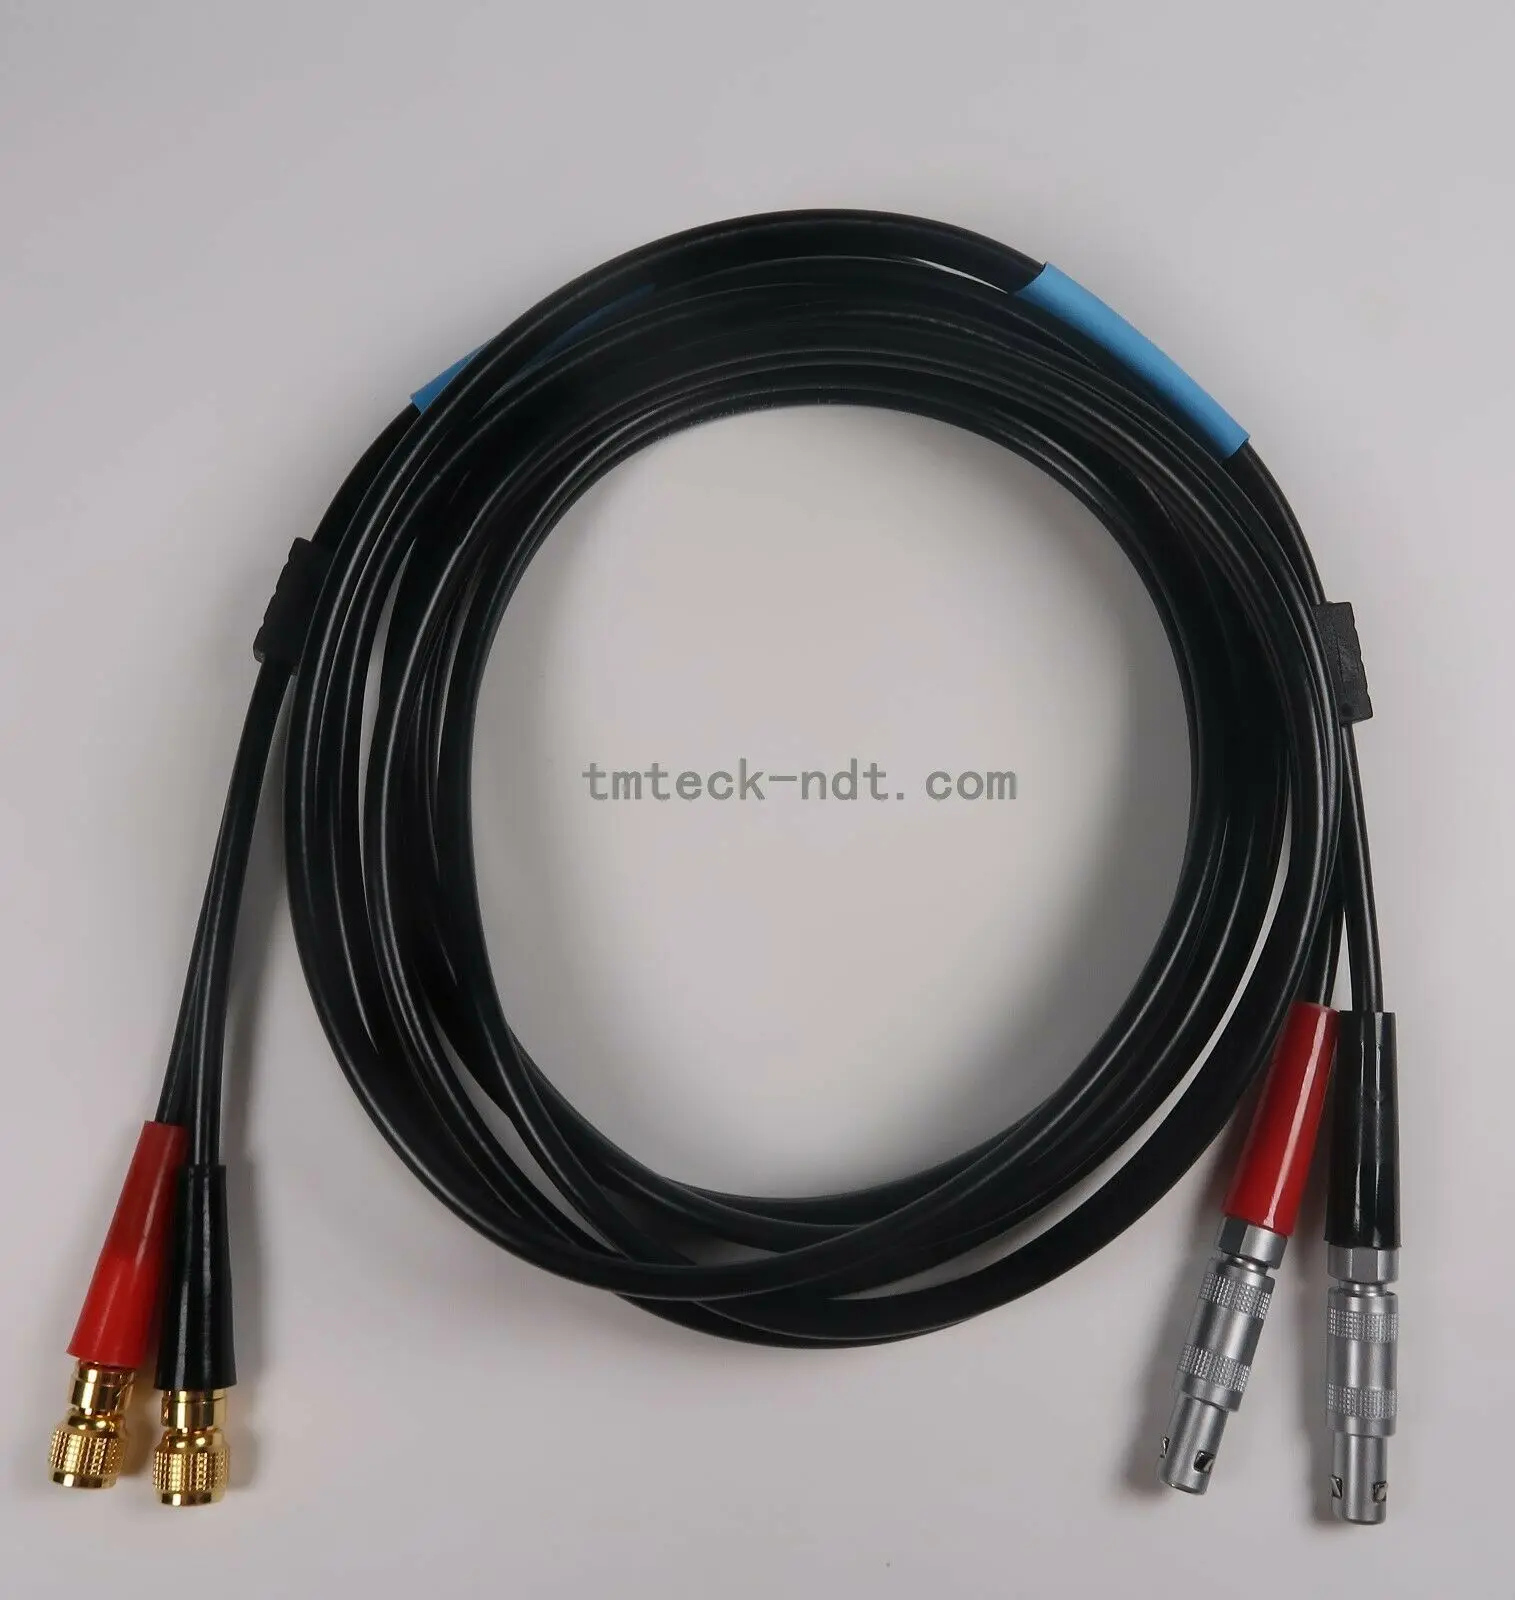 Совместим с двумя промышленными коаксиальными кабелями Lemo00 и Microdot RG174, ультразвуковой кабель для дефектоскопа